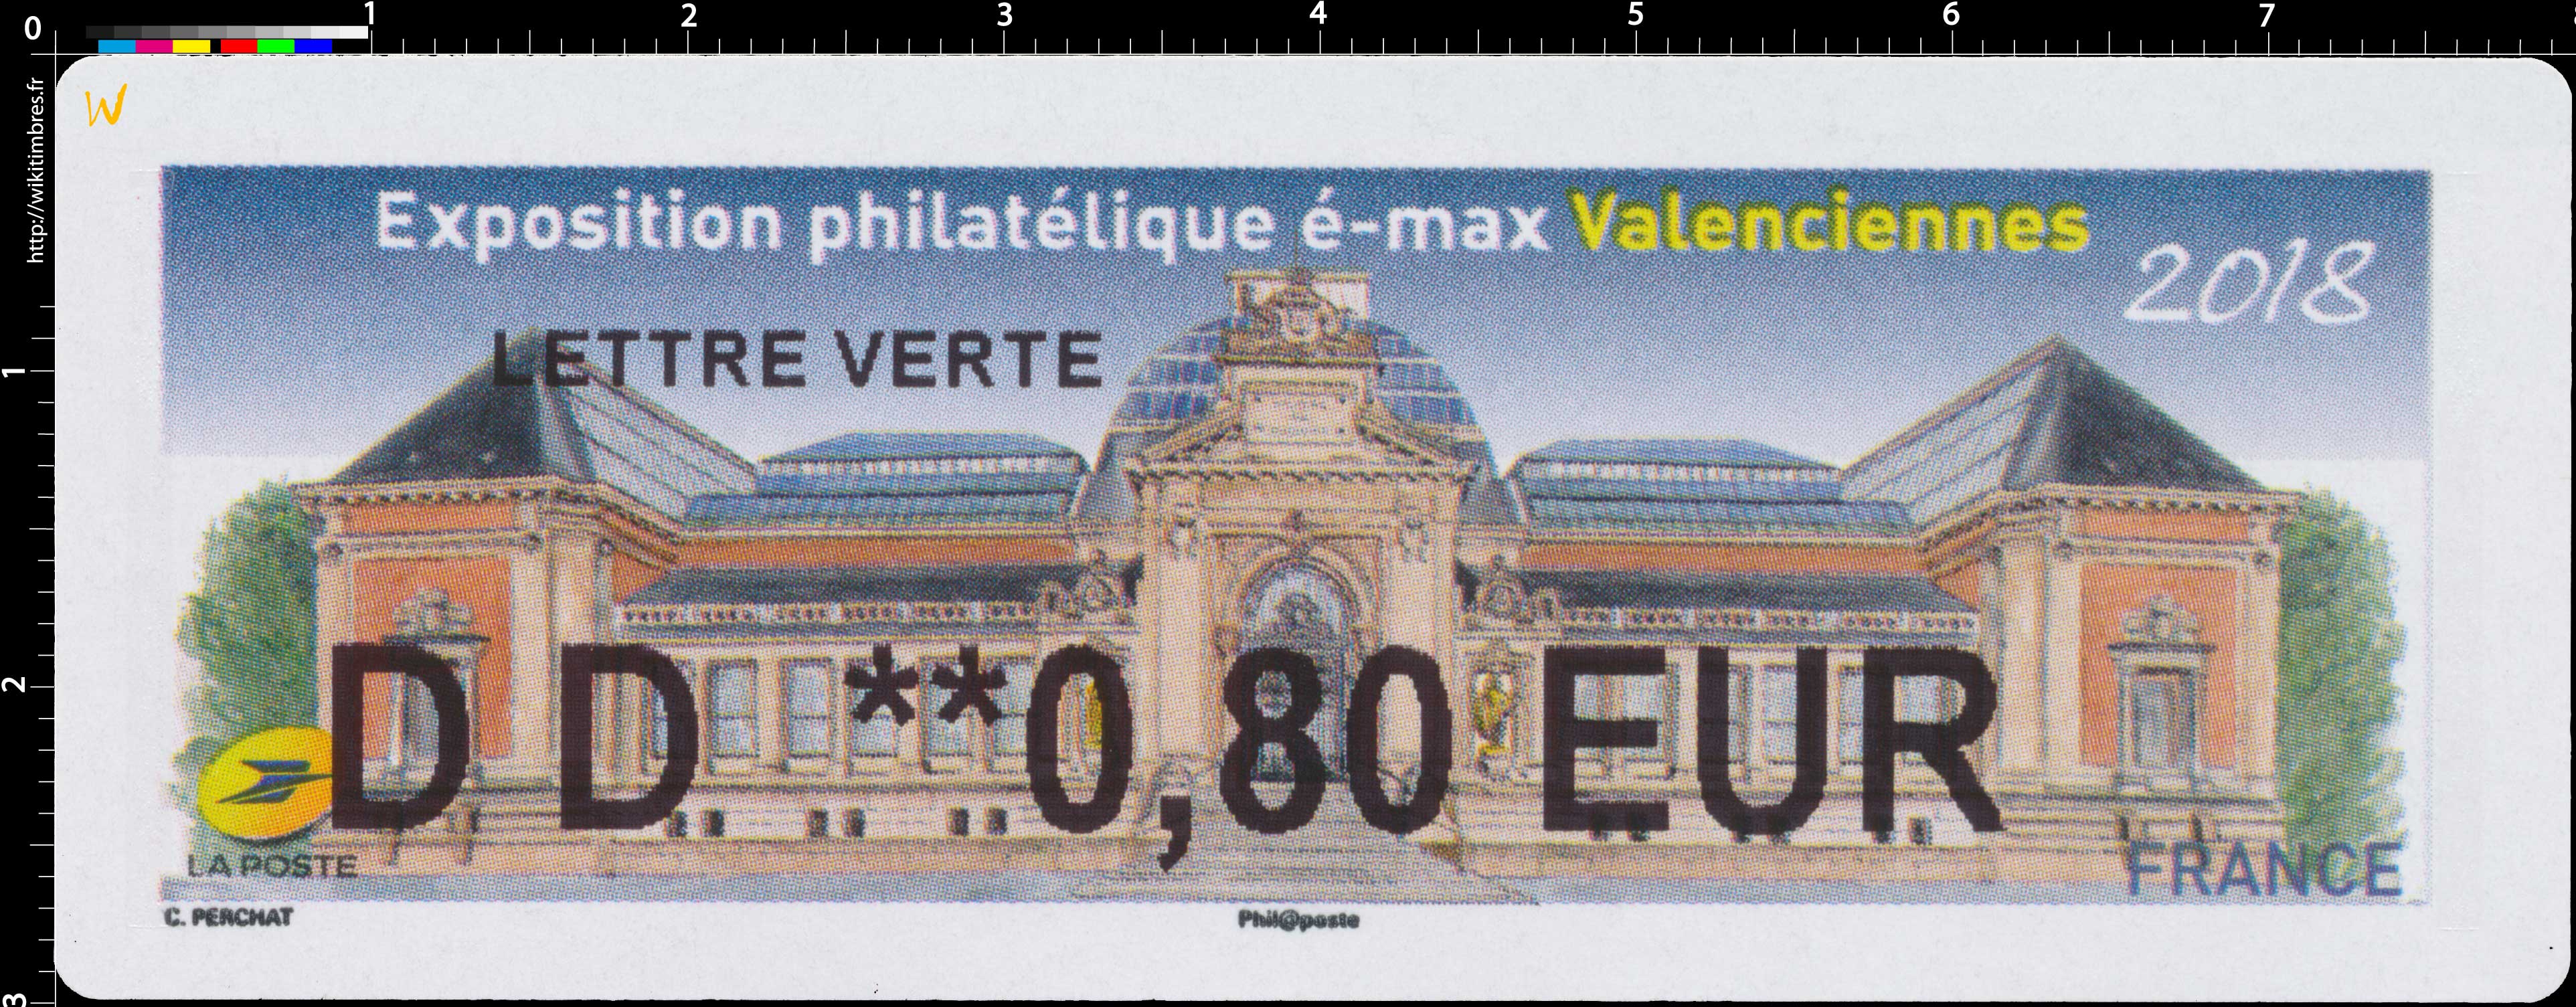 2018 Exposition philatélique é-max Valenciennes